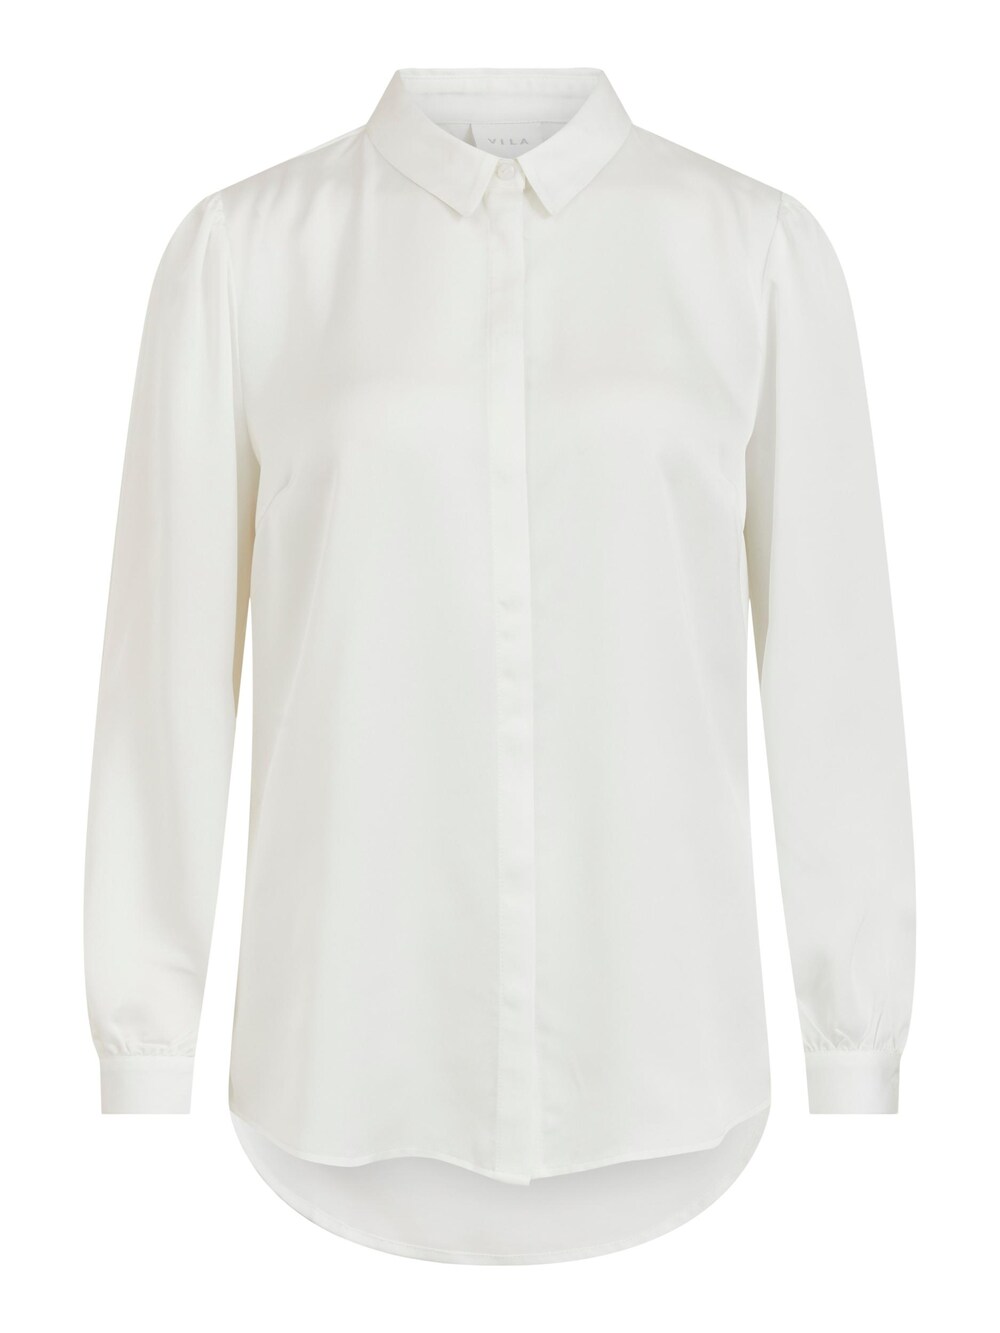 Блузка Vila, белый блузка с кружевом rouge vila белый